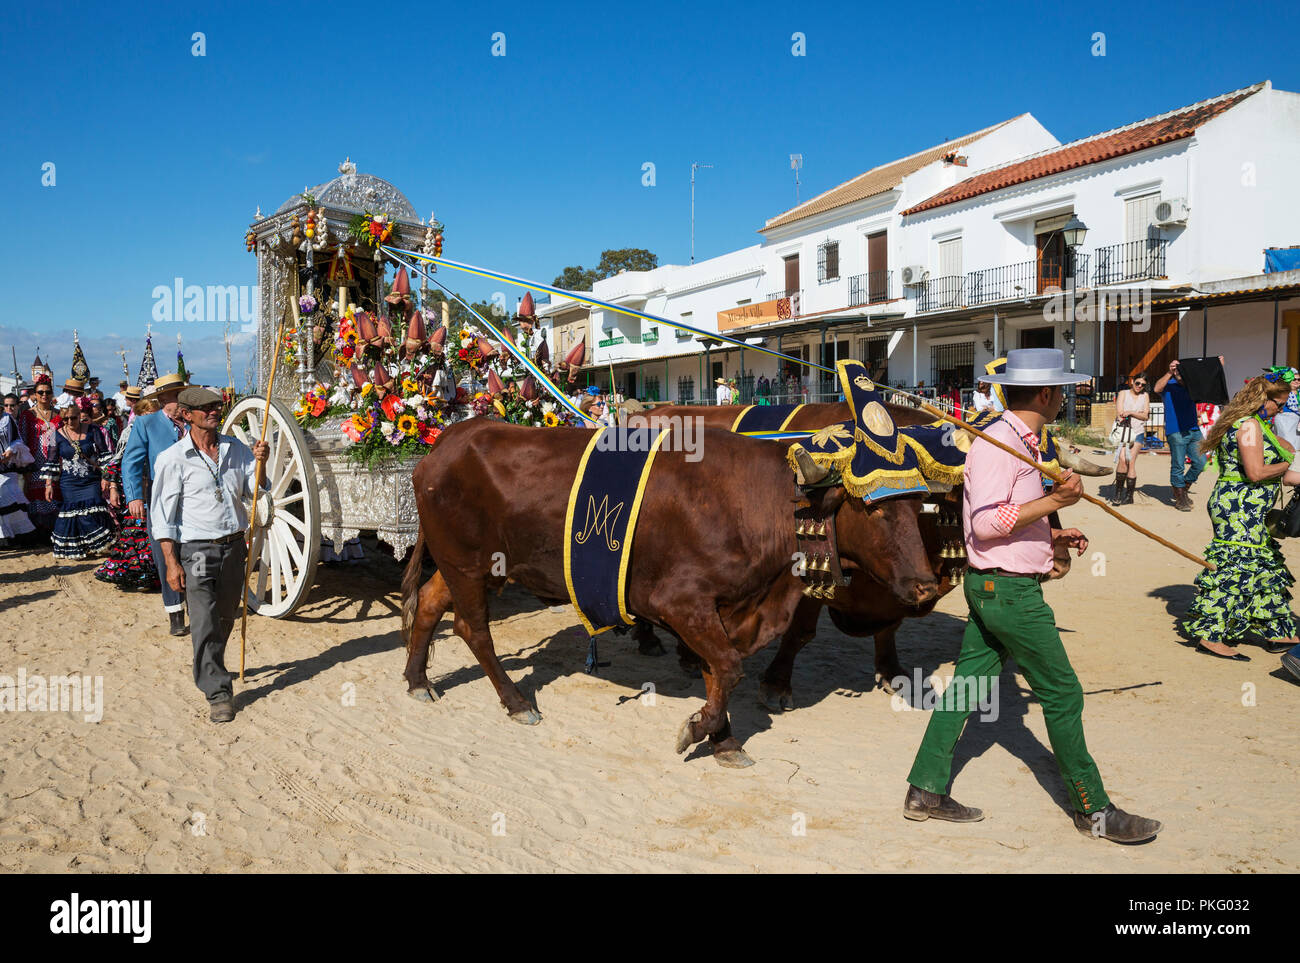 Die Menschen in der traditionellen Kleidung und dekoriert, oxcarts Pfingstwallfahrt von El Rocio, Provinz Huelva, Andalusien, Spanien Stockfoto